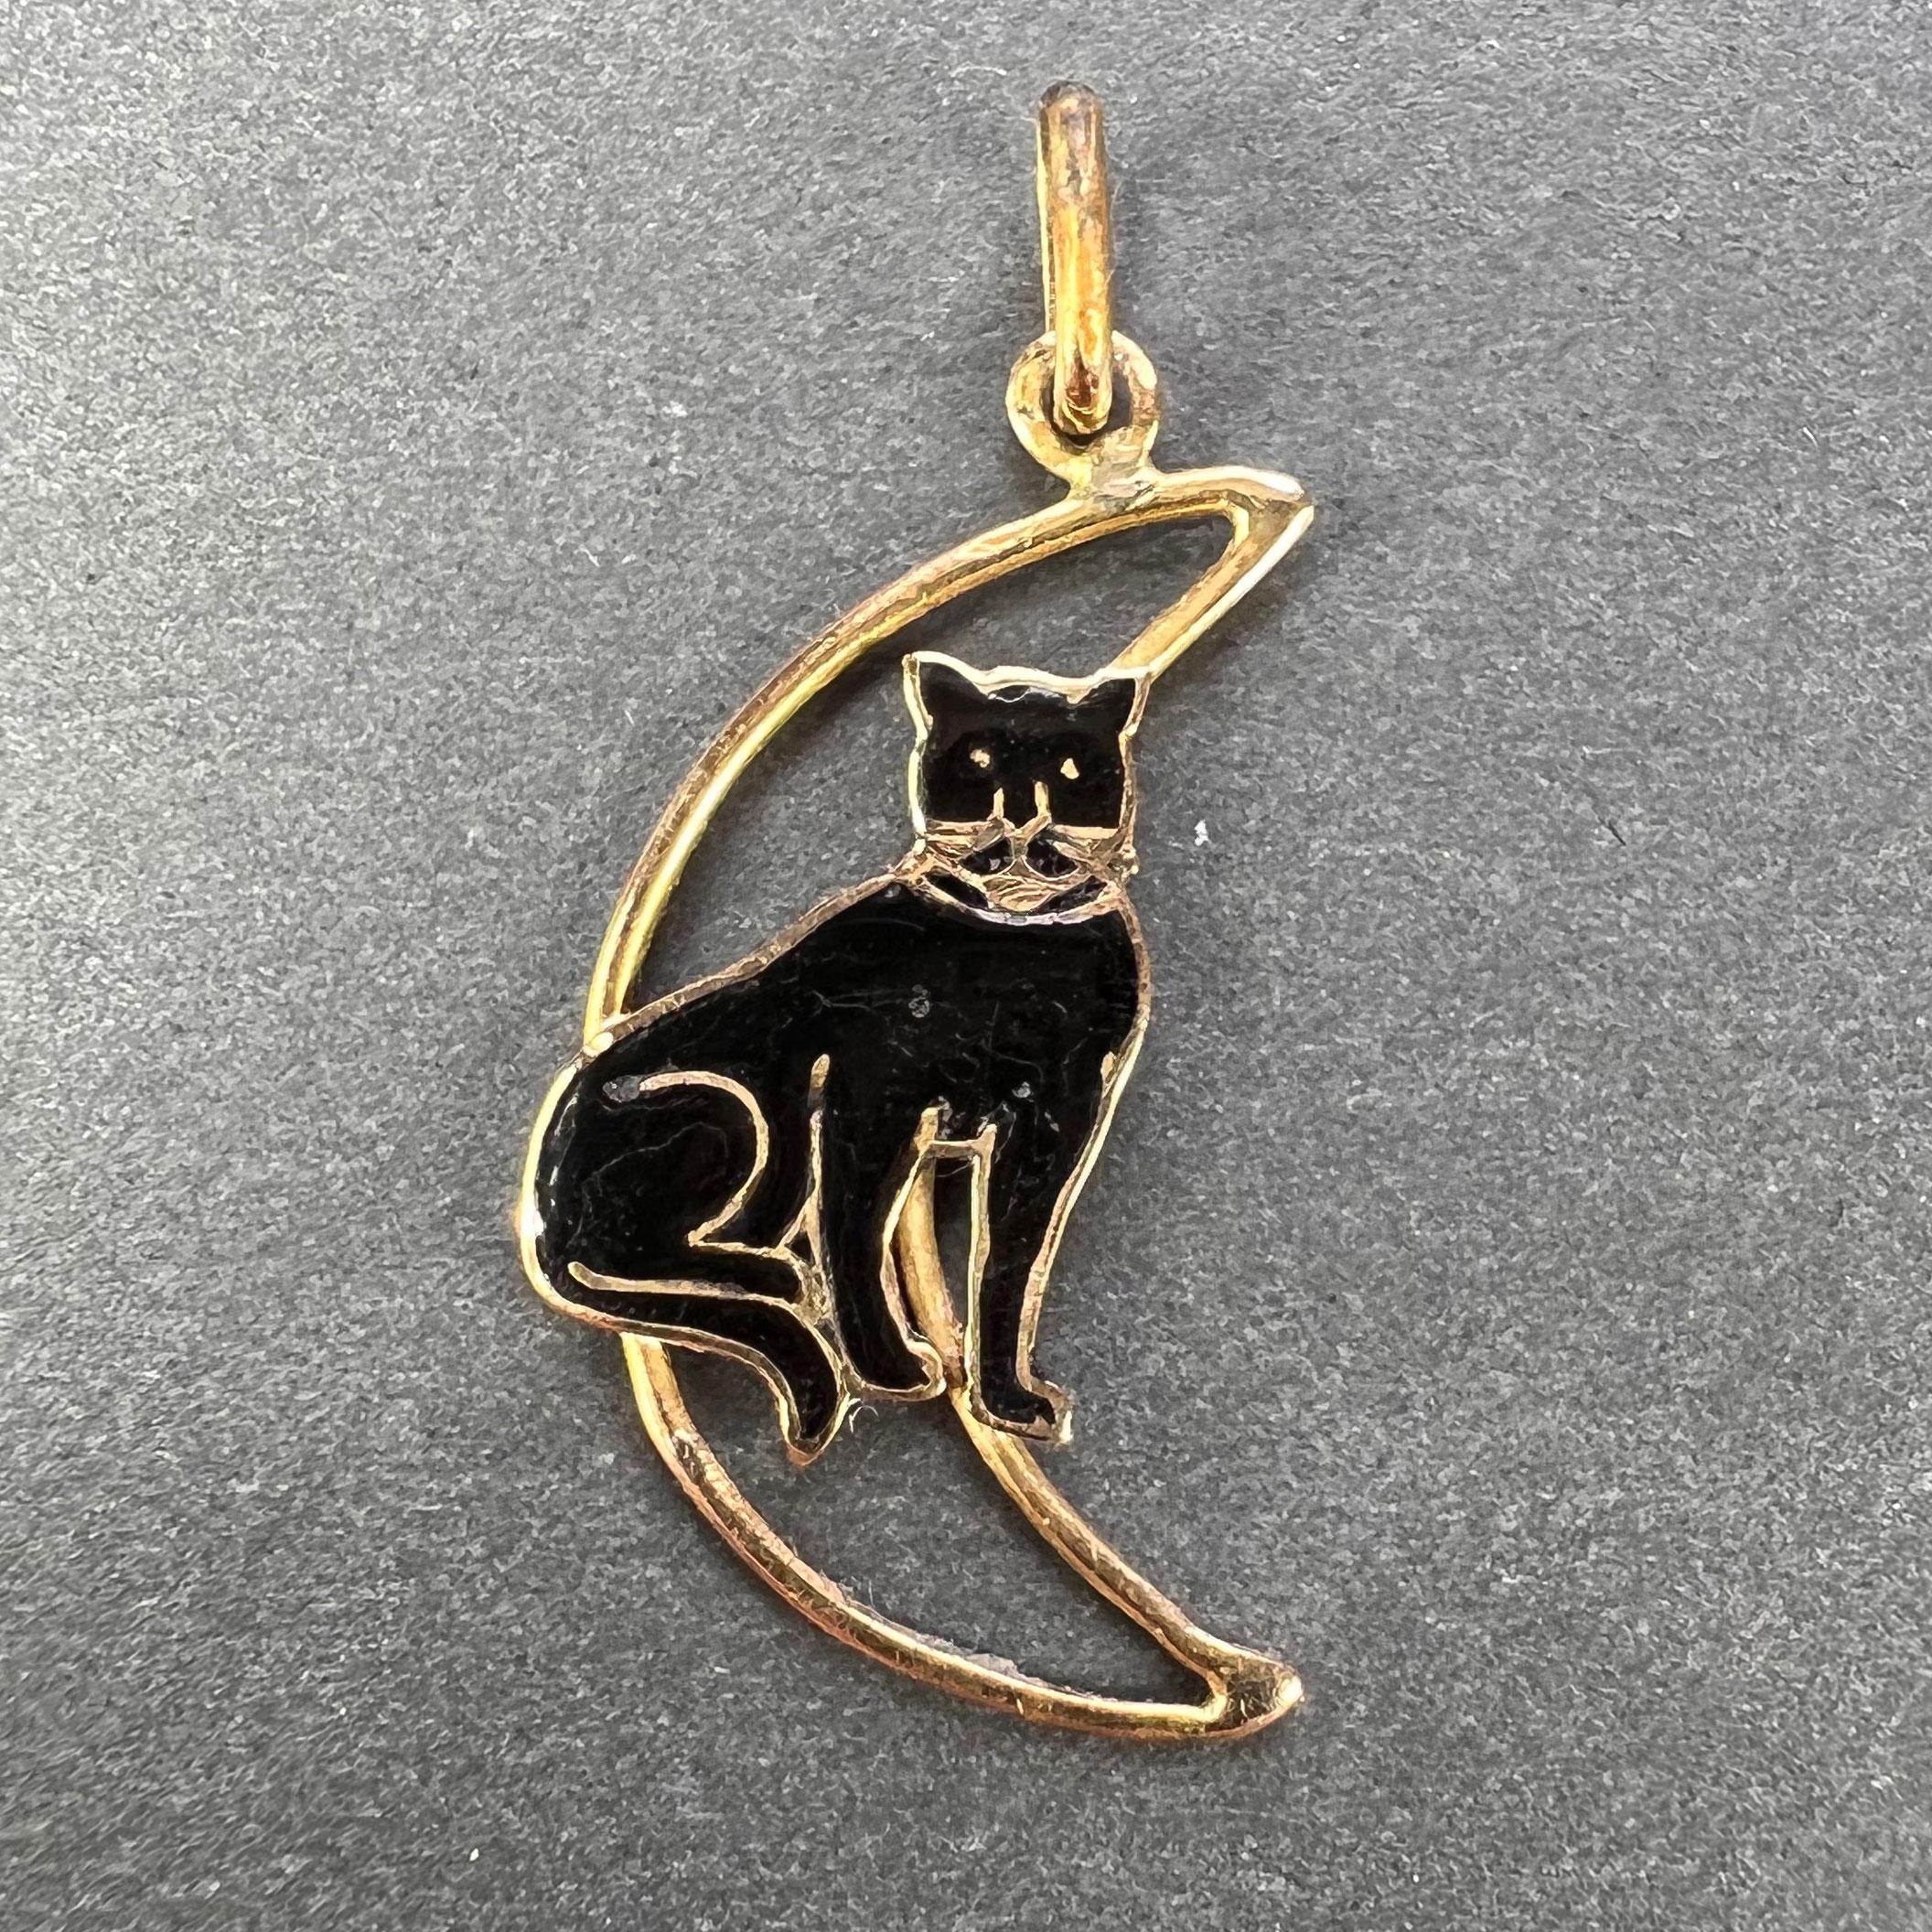 Un pendentif de charme en or jaune 18 carats (18K) conçu comme un croissant de lune en fil de fer avec un chat en émail noir assis dedans. Estampillé de la tête d'aigle pour l'or 18 carats et la fabrication française.

Dimensions : 2.4 x 1,4 x 0,15